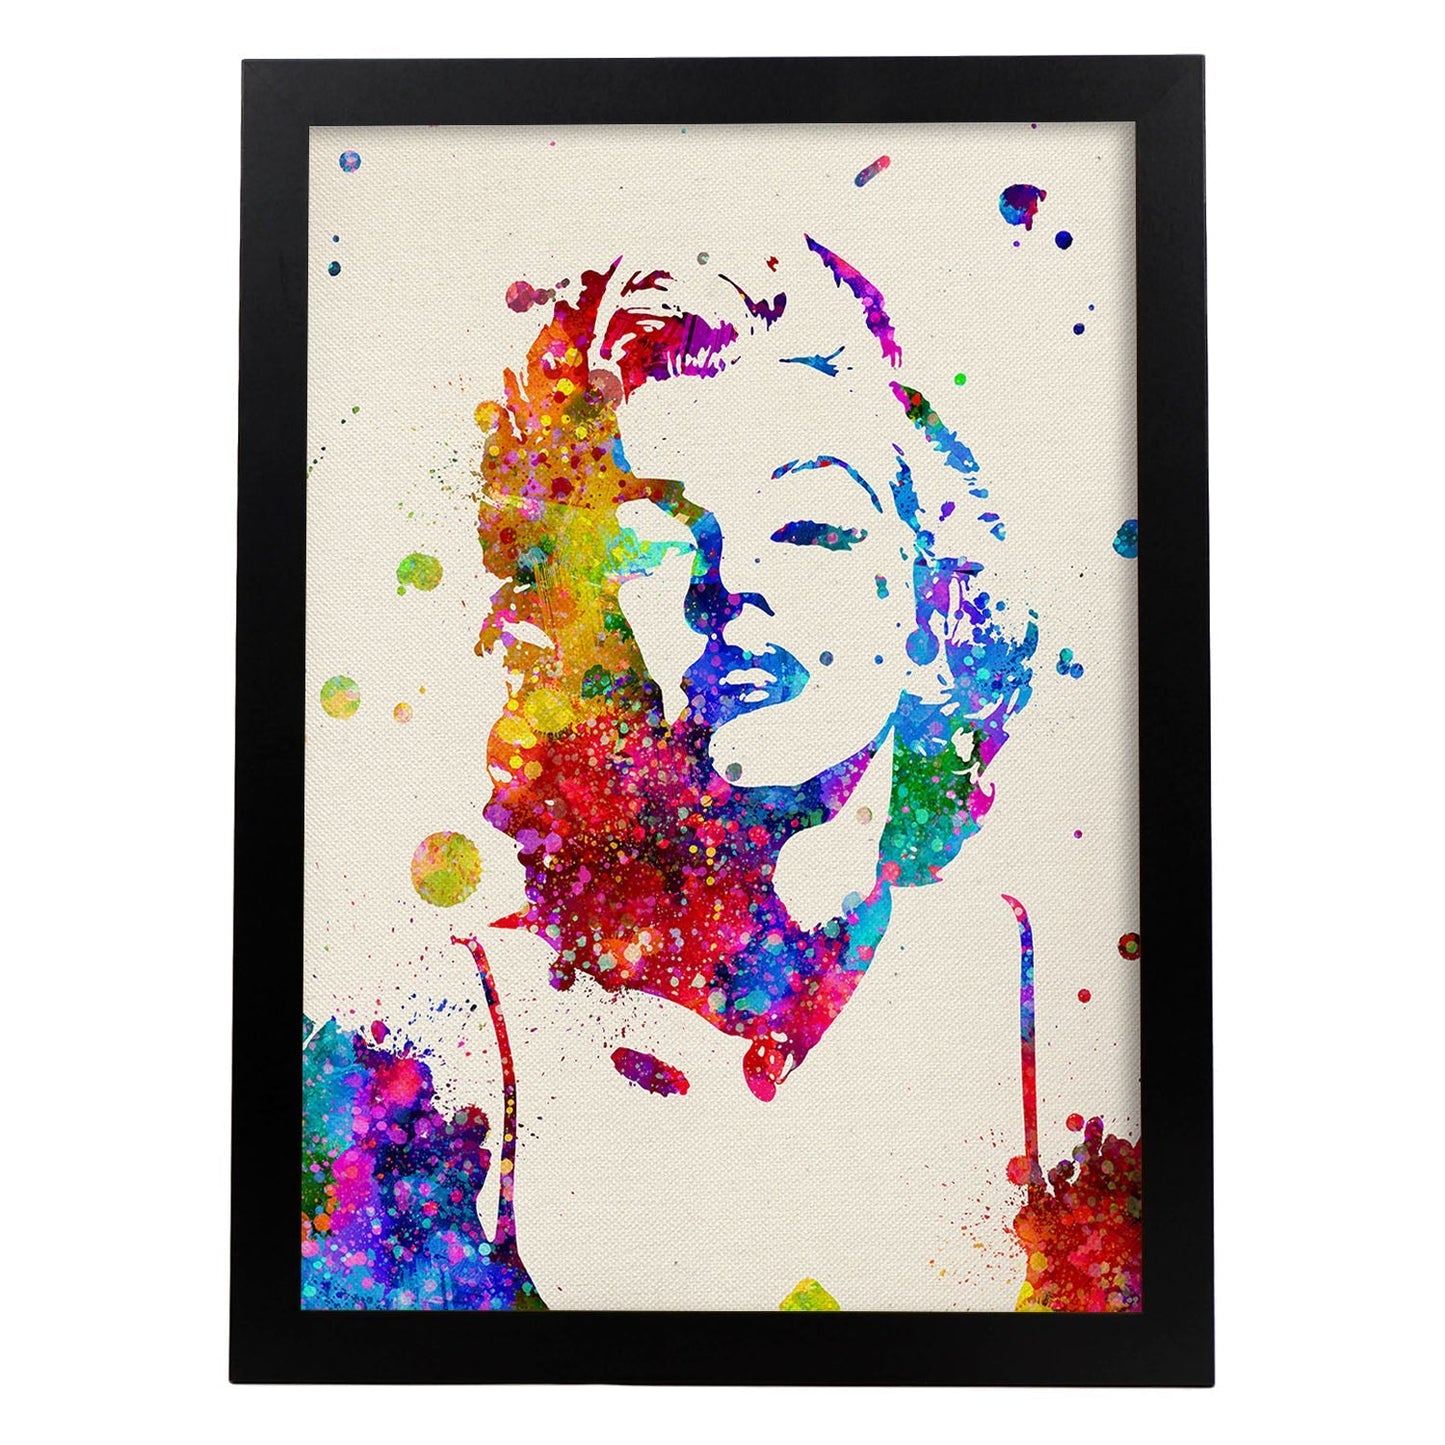 Poster imagen de Marilyn Monroe. Posters con diseño acuarela de famosos, actores, músicos-Artwork-Nacnic-A4-Marco Negro-Nacnic Estudio SL